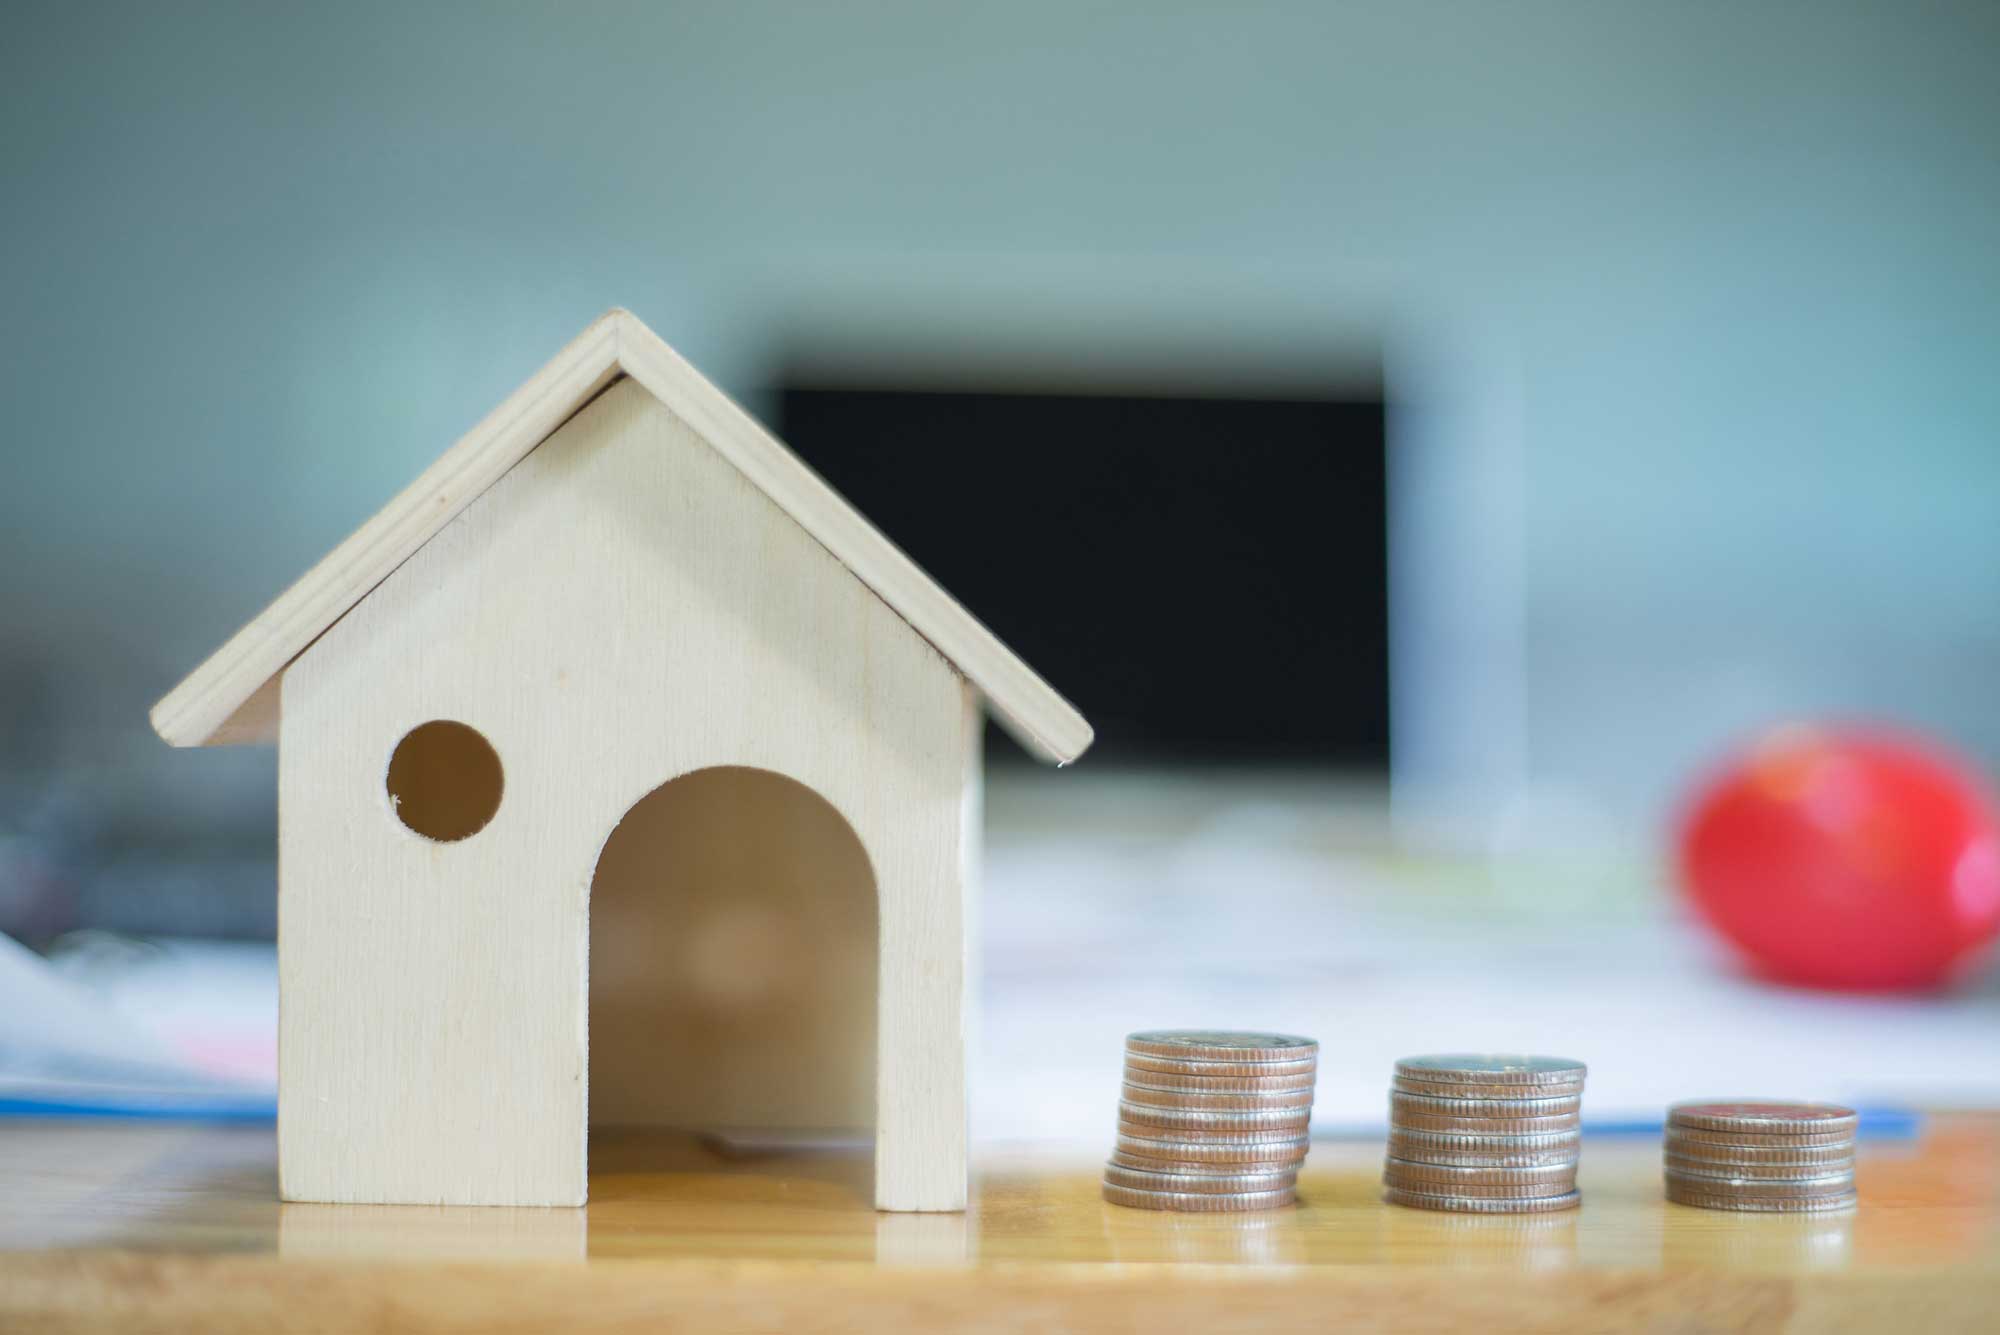 Perché acquistare una casa all’asta? I vantaggi | Avv. Paolo Corvino | avvocatoasteimmobiliari.com